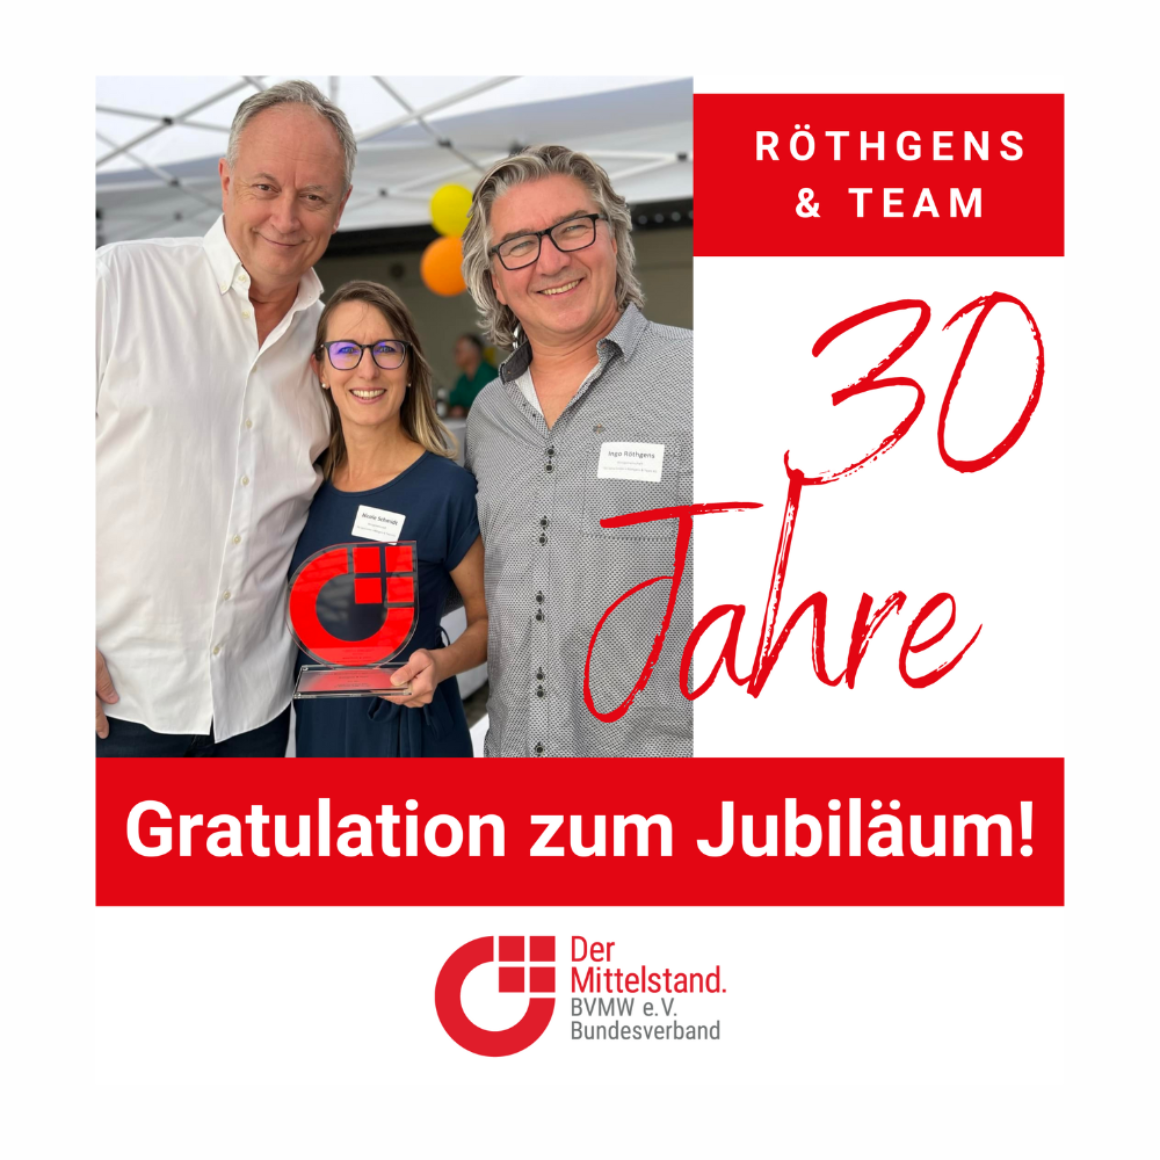 Röthgens & Team 30 - Jahre Jubiläum